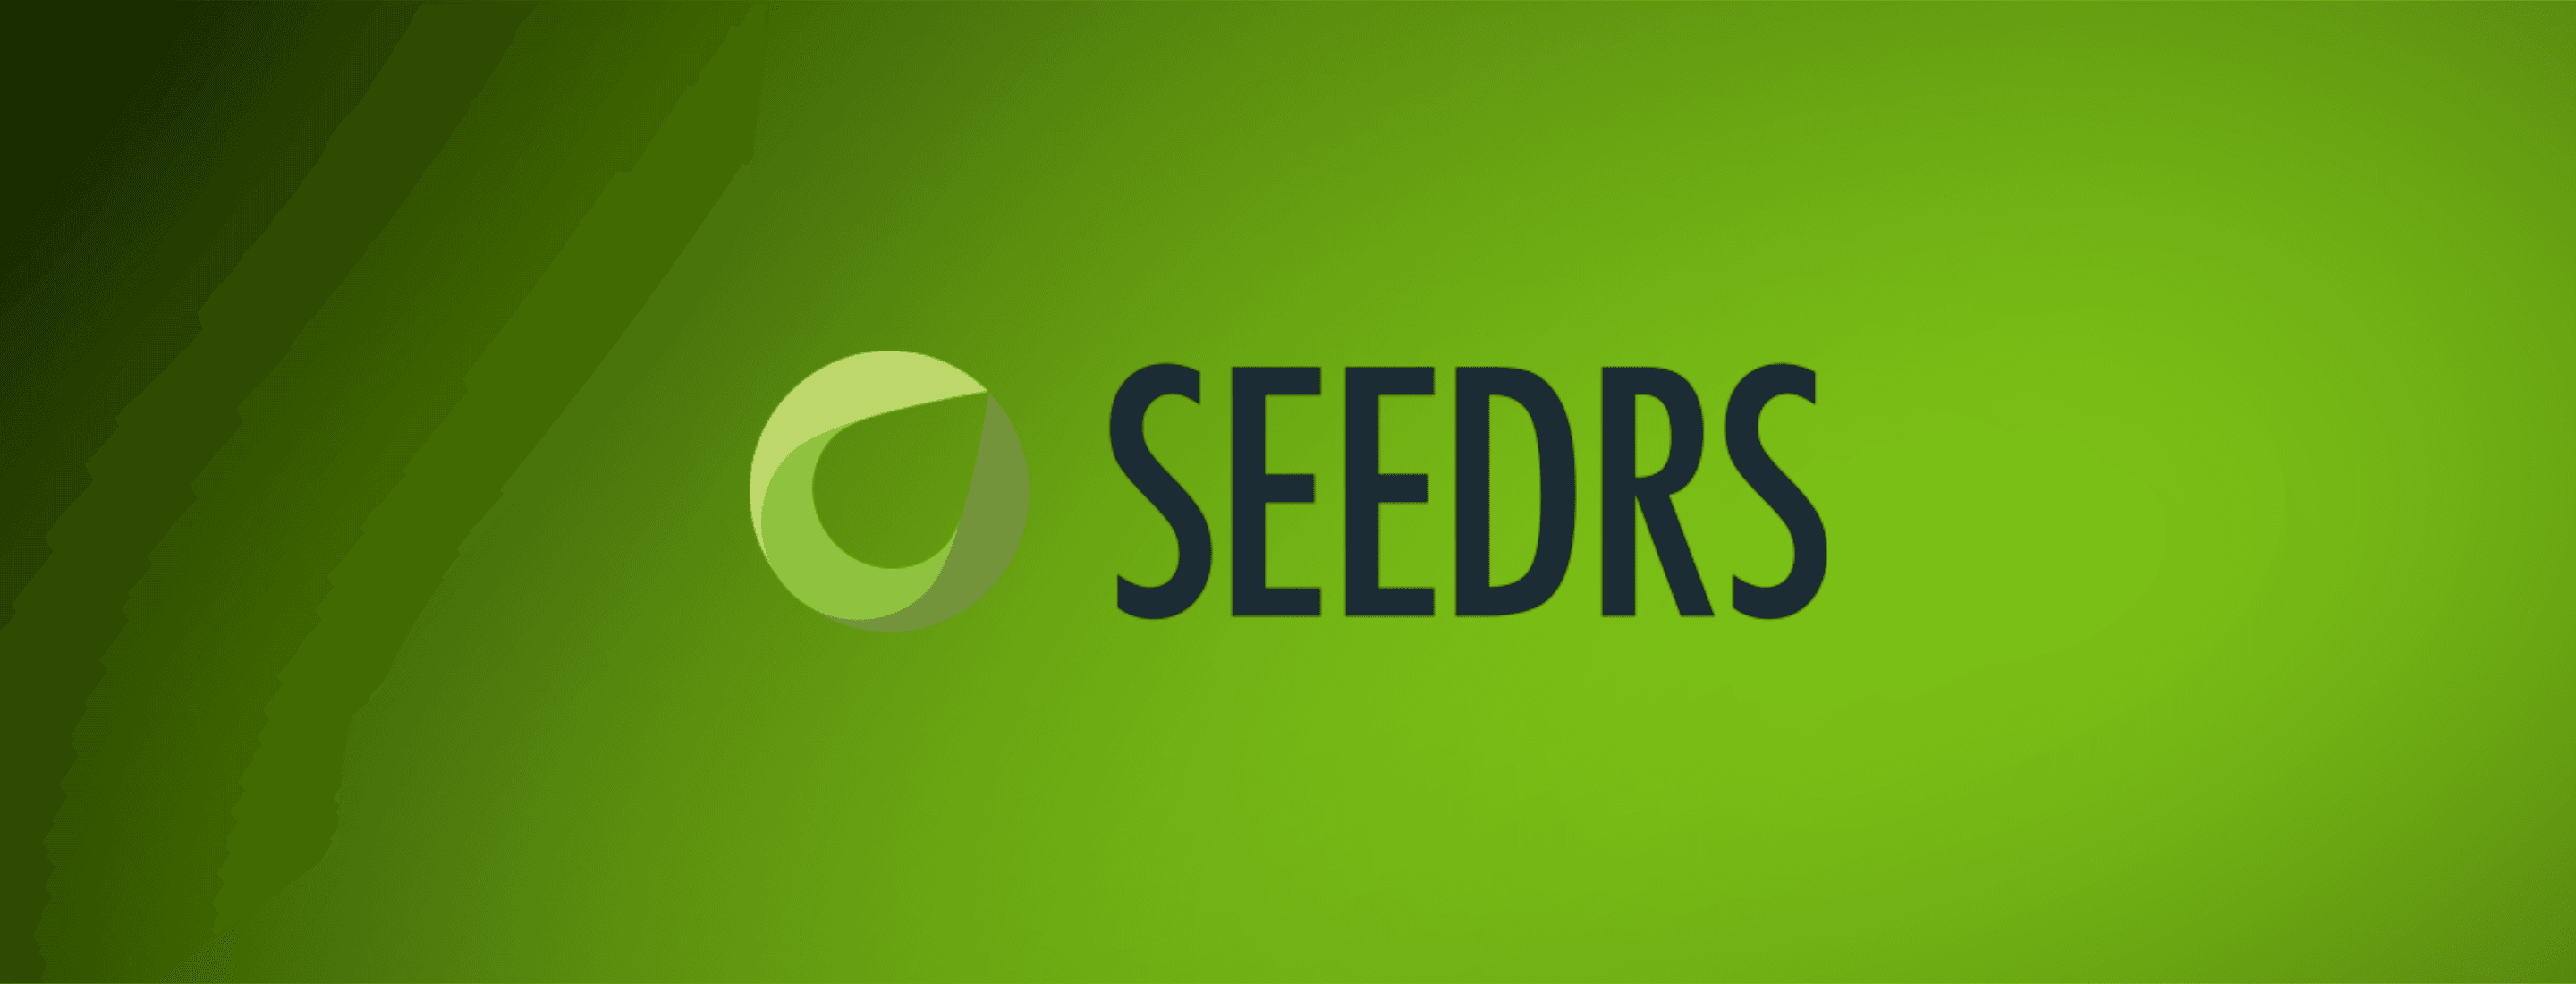 seedrsSecondary